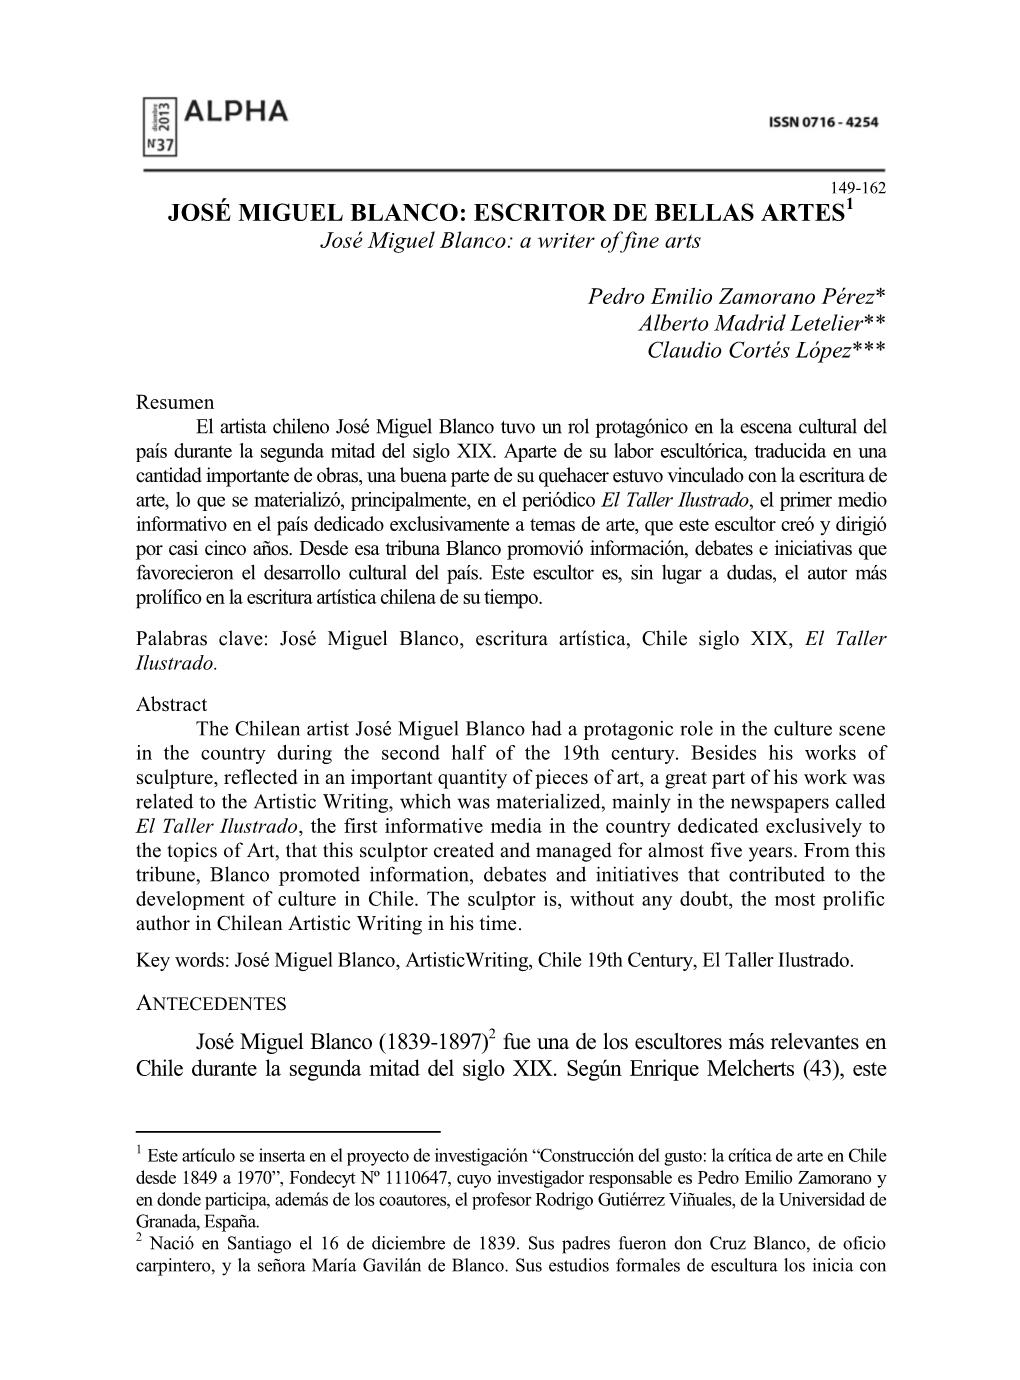 JOSÉ MIGUEL BLANCO: ESCRITOR DE BELLAS ARTES1 José Miguel Blanco: a Writer of Fine Arts